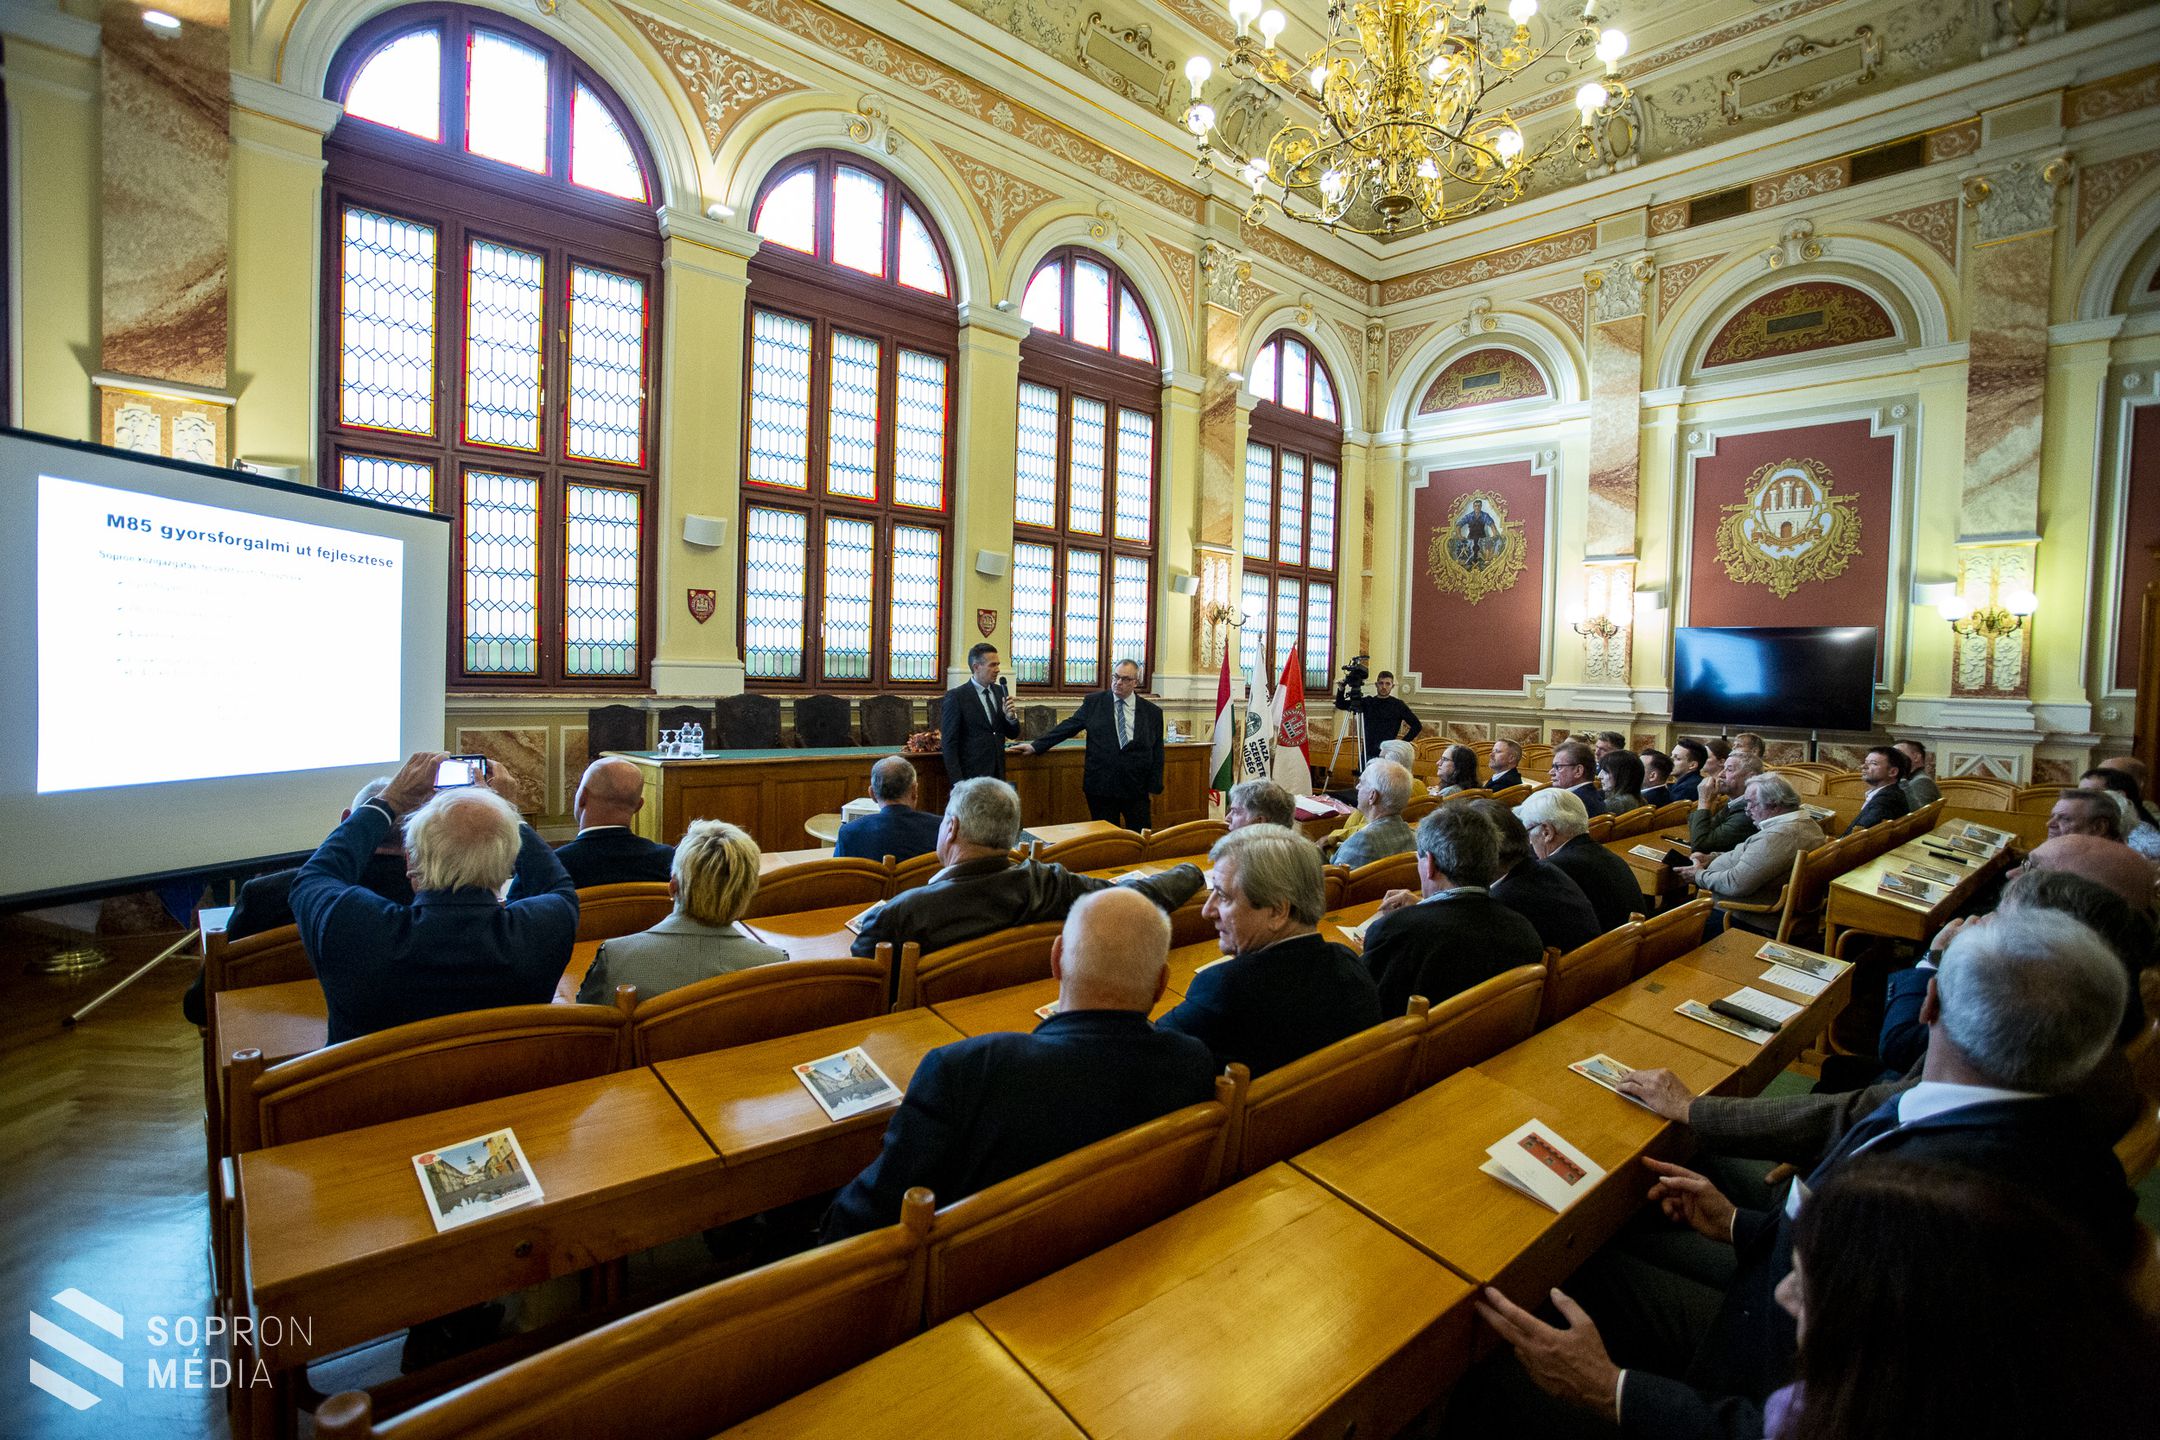 Osztrák gazdasági szervezetet fogadtak Sopronban